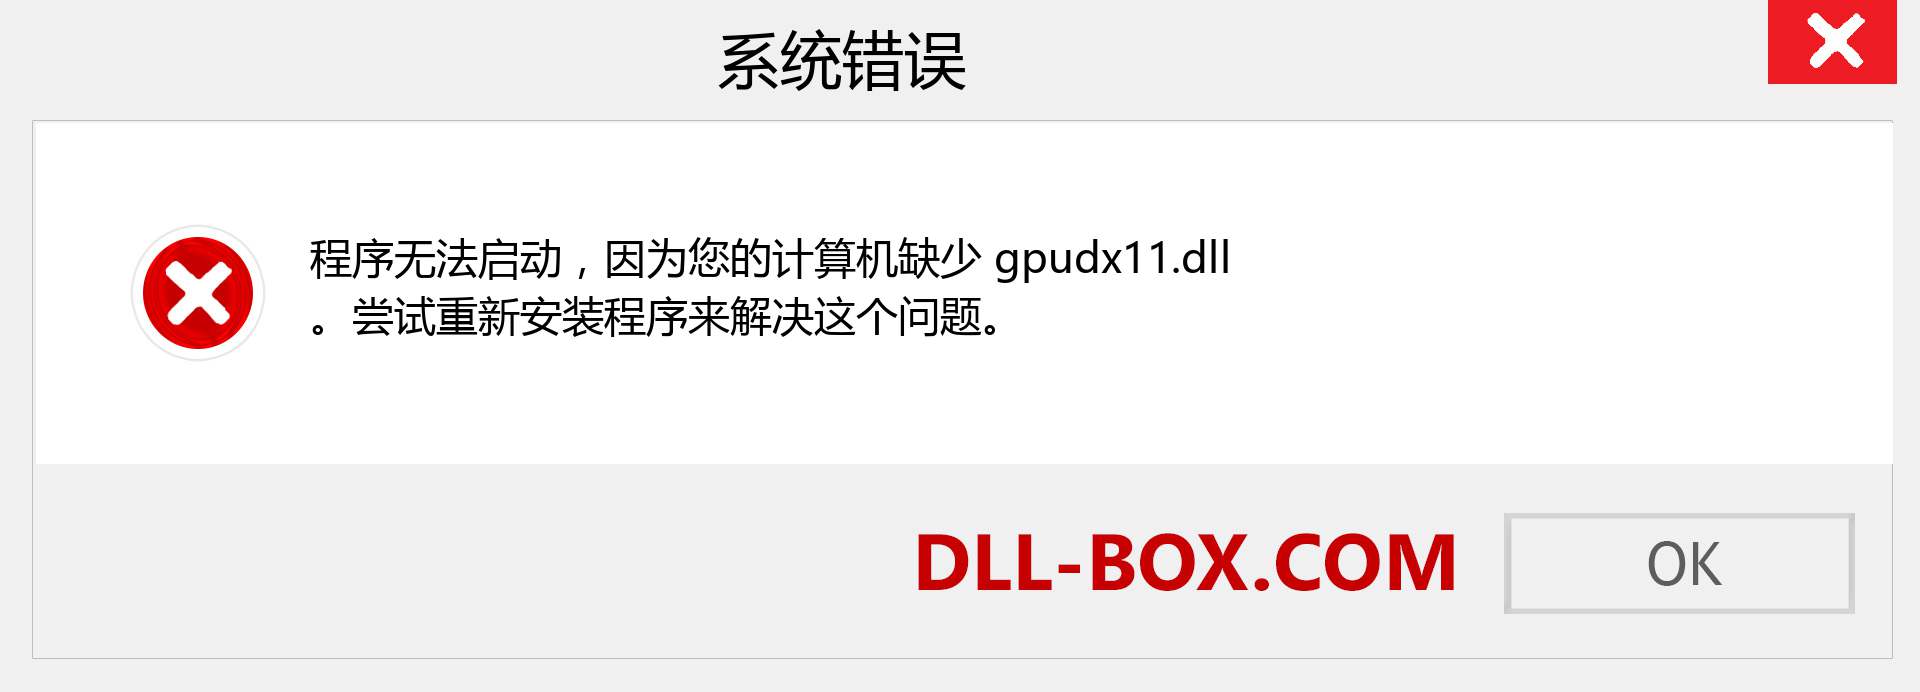 gpudx11.dll 文件丢失？。 适用于 Windows 7、8、10 的下载 - 修复 Windows、照片、图像上的 gpudx11 dll 丢失错误